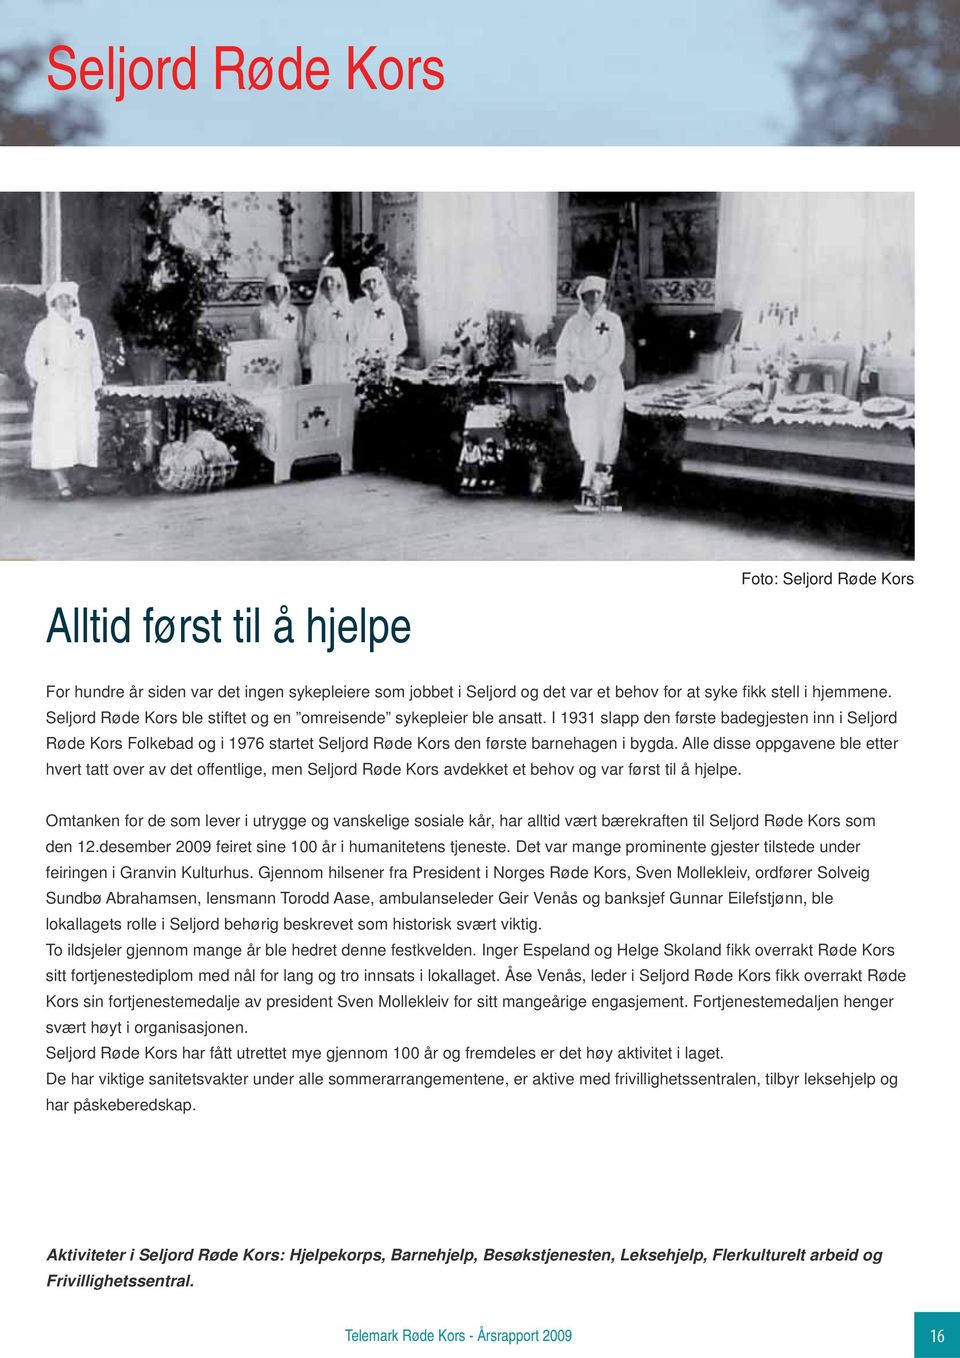 I 1931 slapp den første badegjesten inn i Seljord Røde Kors Folkebad og i 1976 startet Seljord Røde Kors den første barnehagen i bygda.